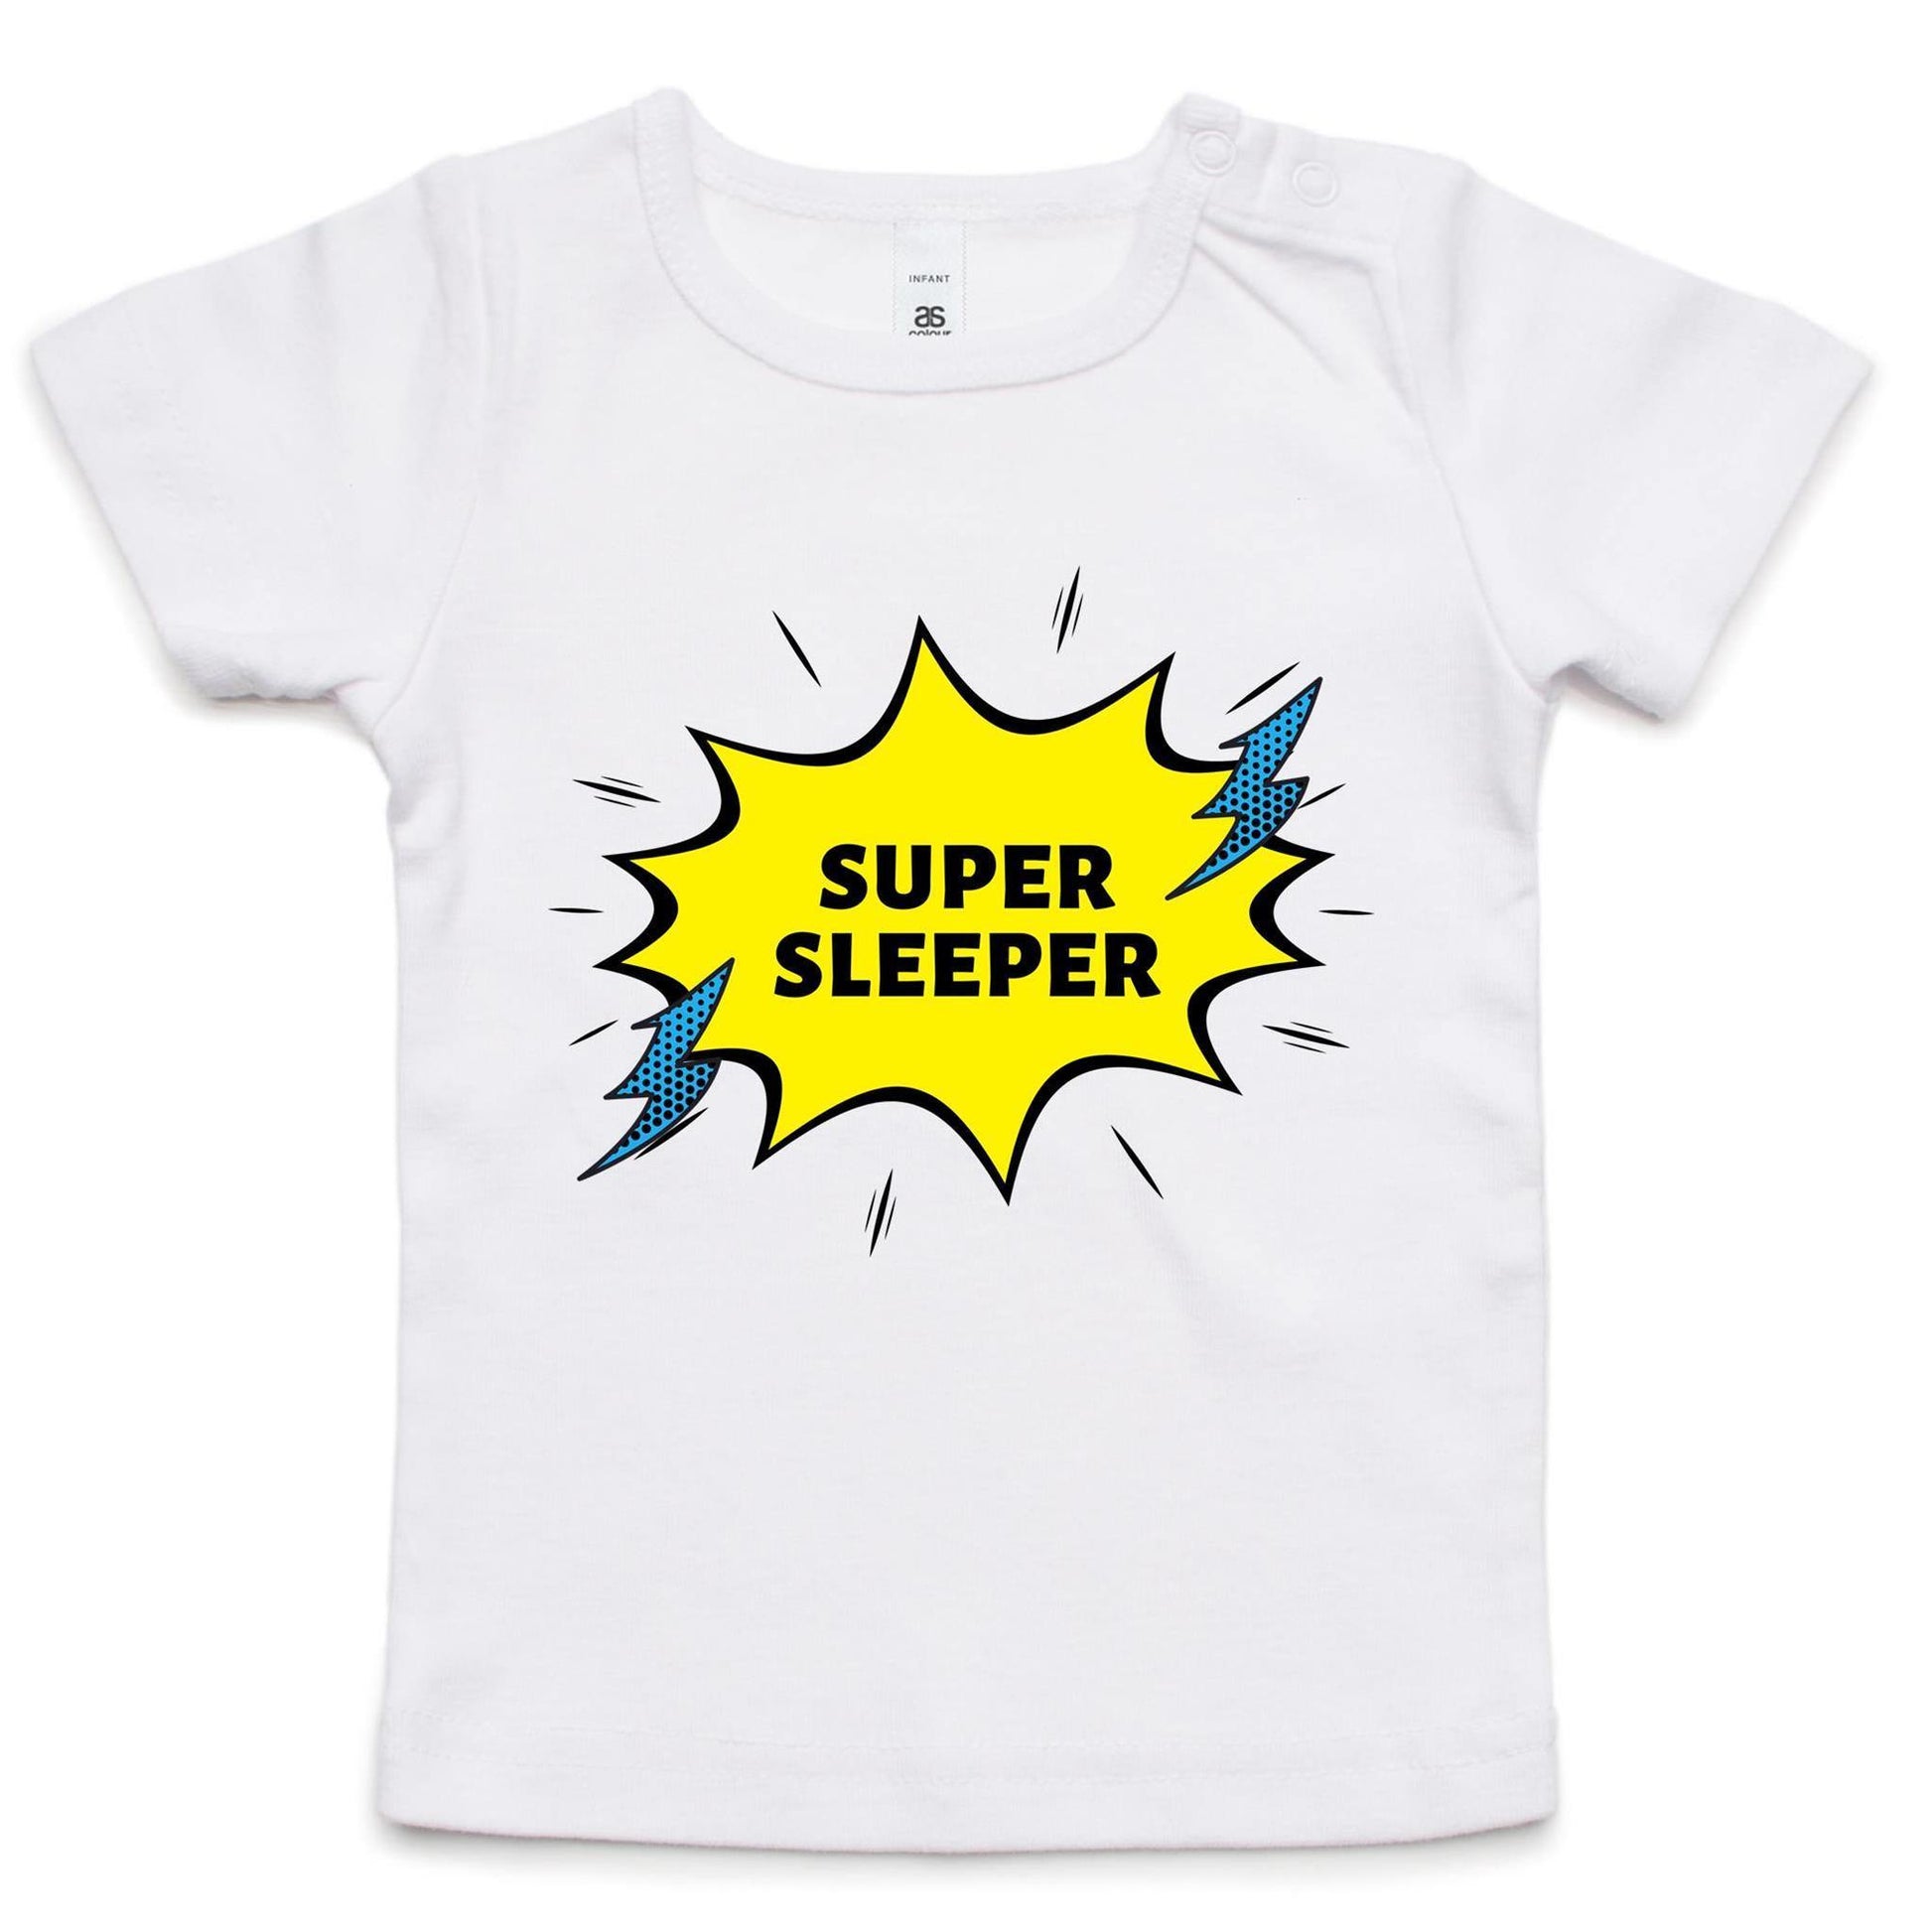 Super Sleeper - Baby T-shirt White Baby T-shirt kids